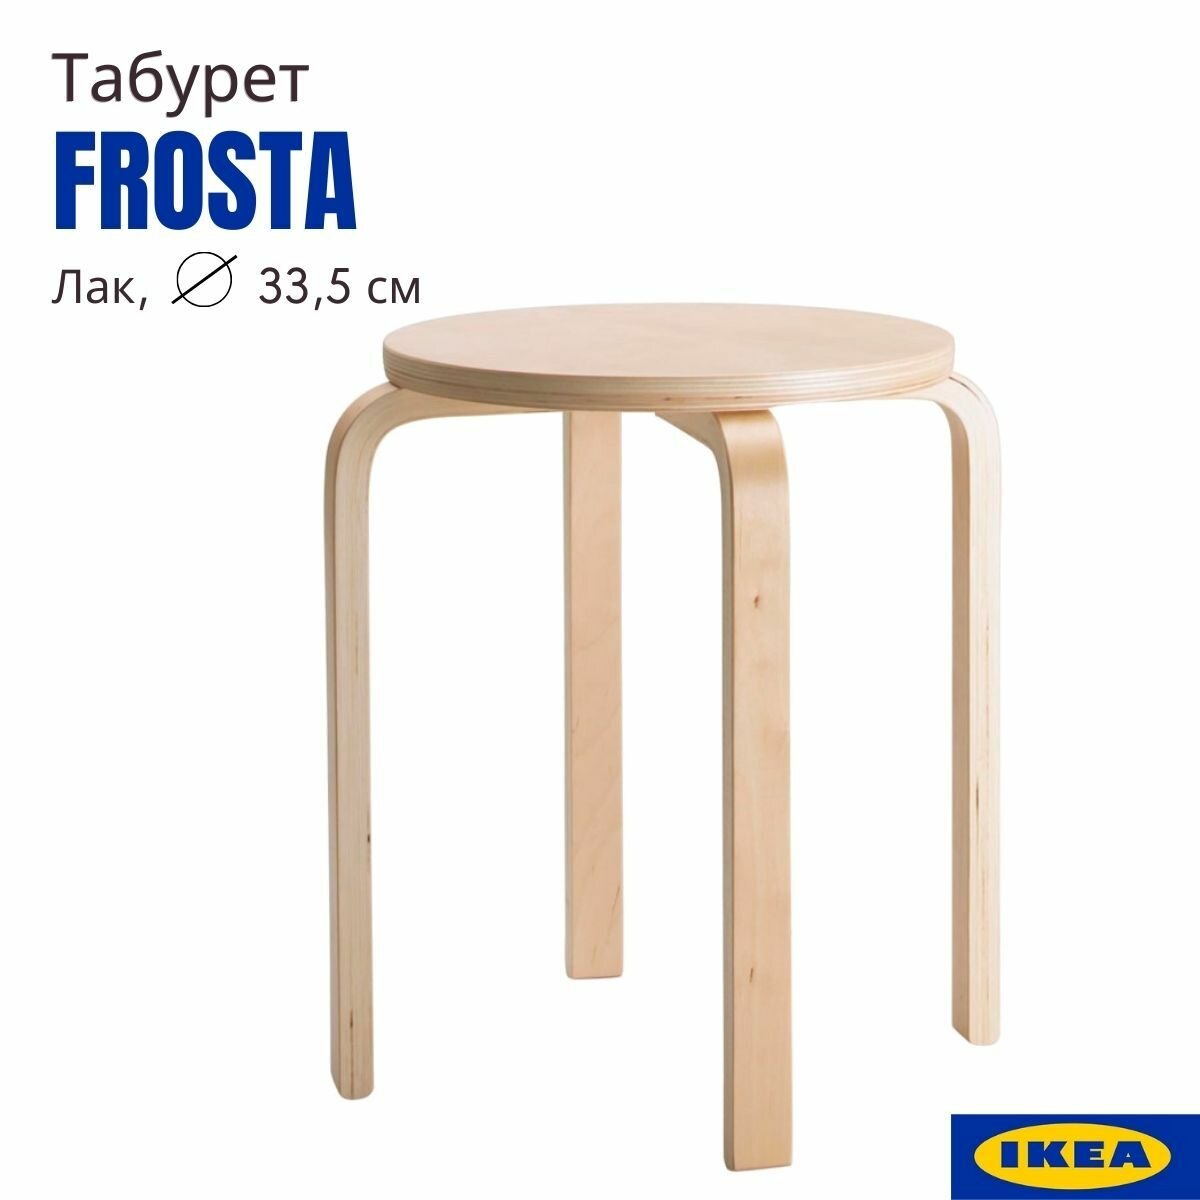 Табурет для кухни лак 33x45 см 1 шт аналог икеа фроста (IKEA FROSTA) круглый деревянный табурет